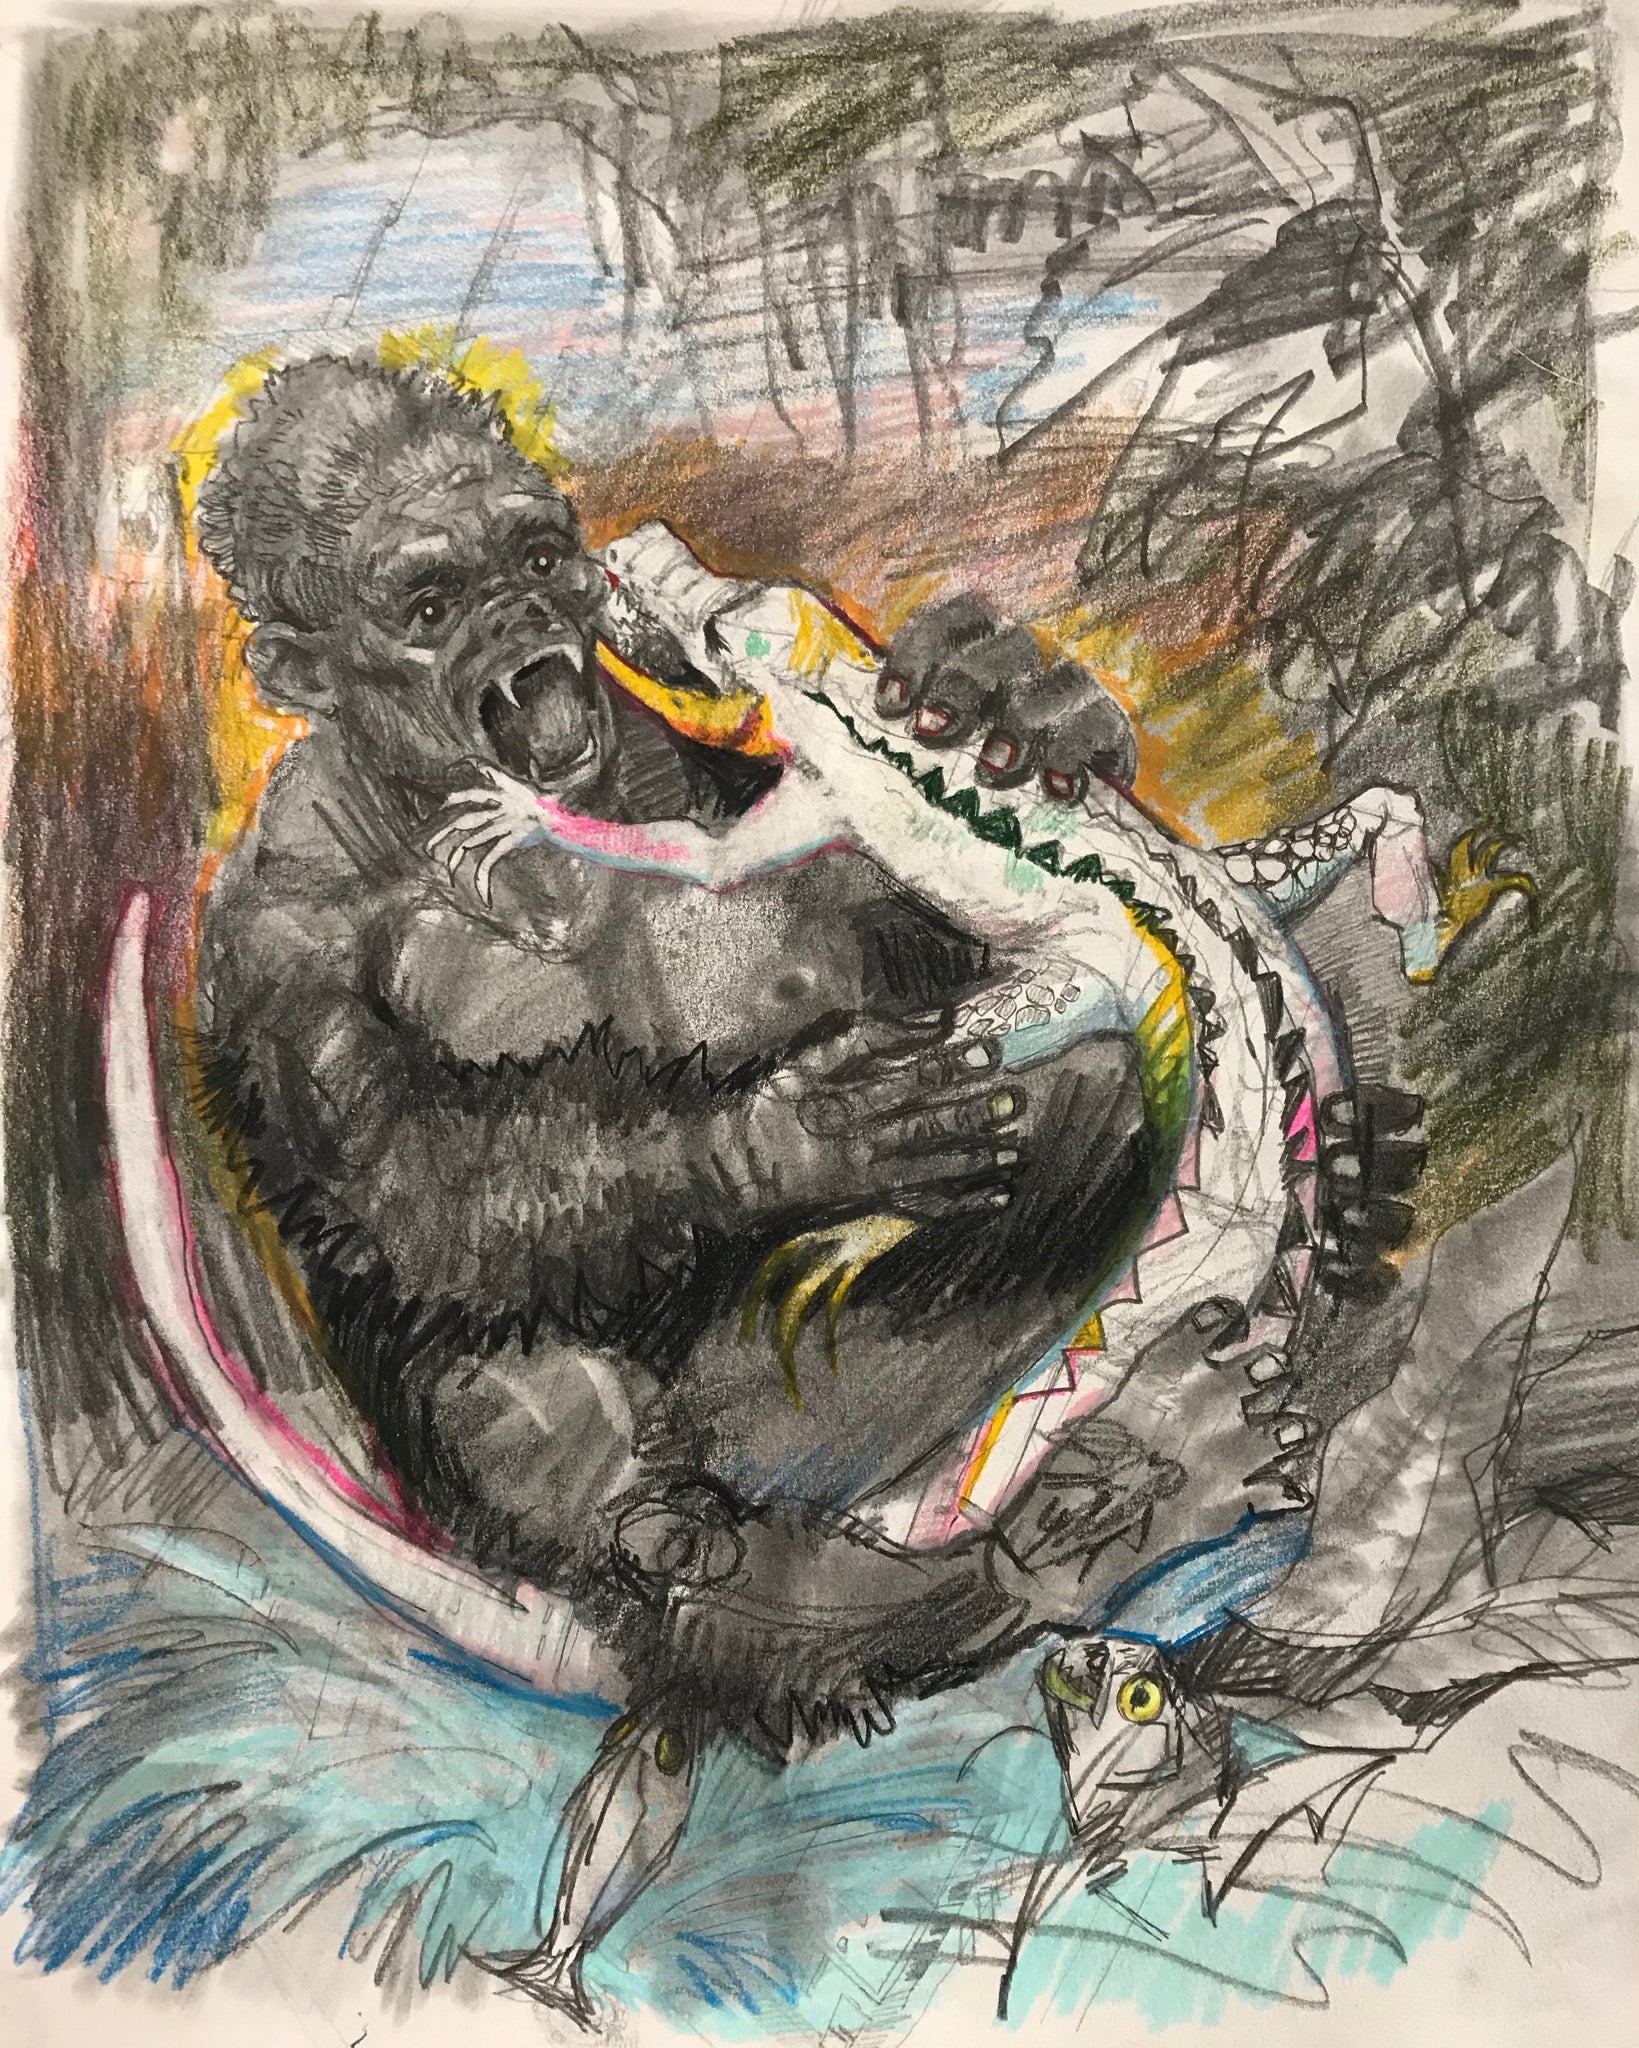 Gorilla & Albino Alligator (11x14 inches)